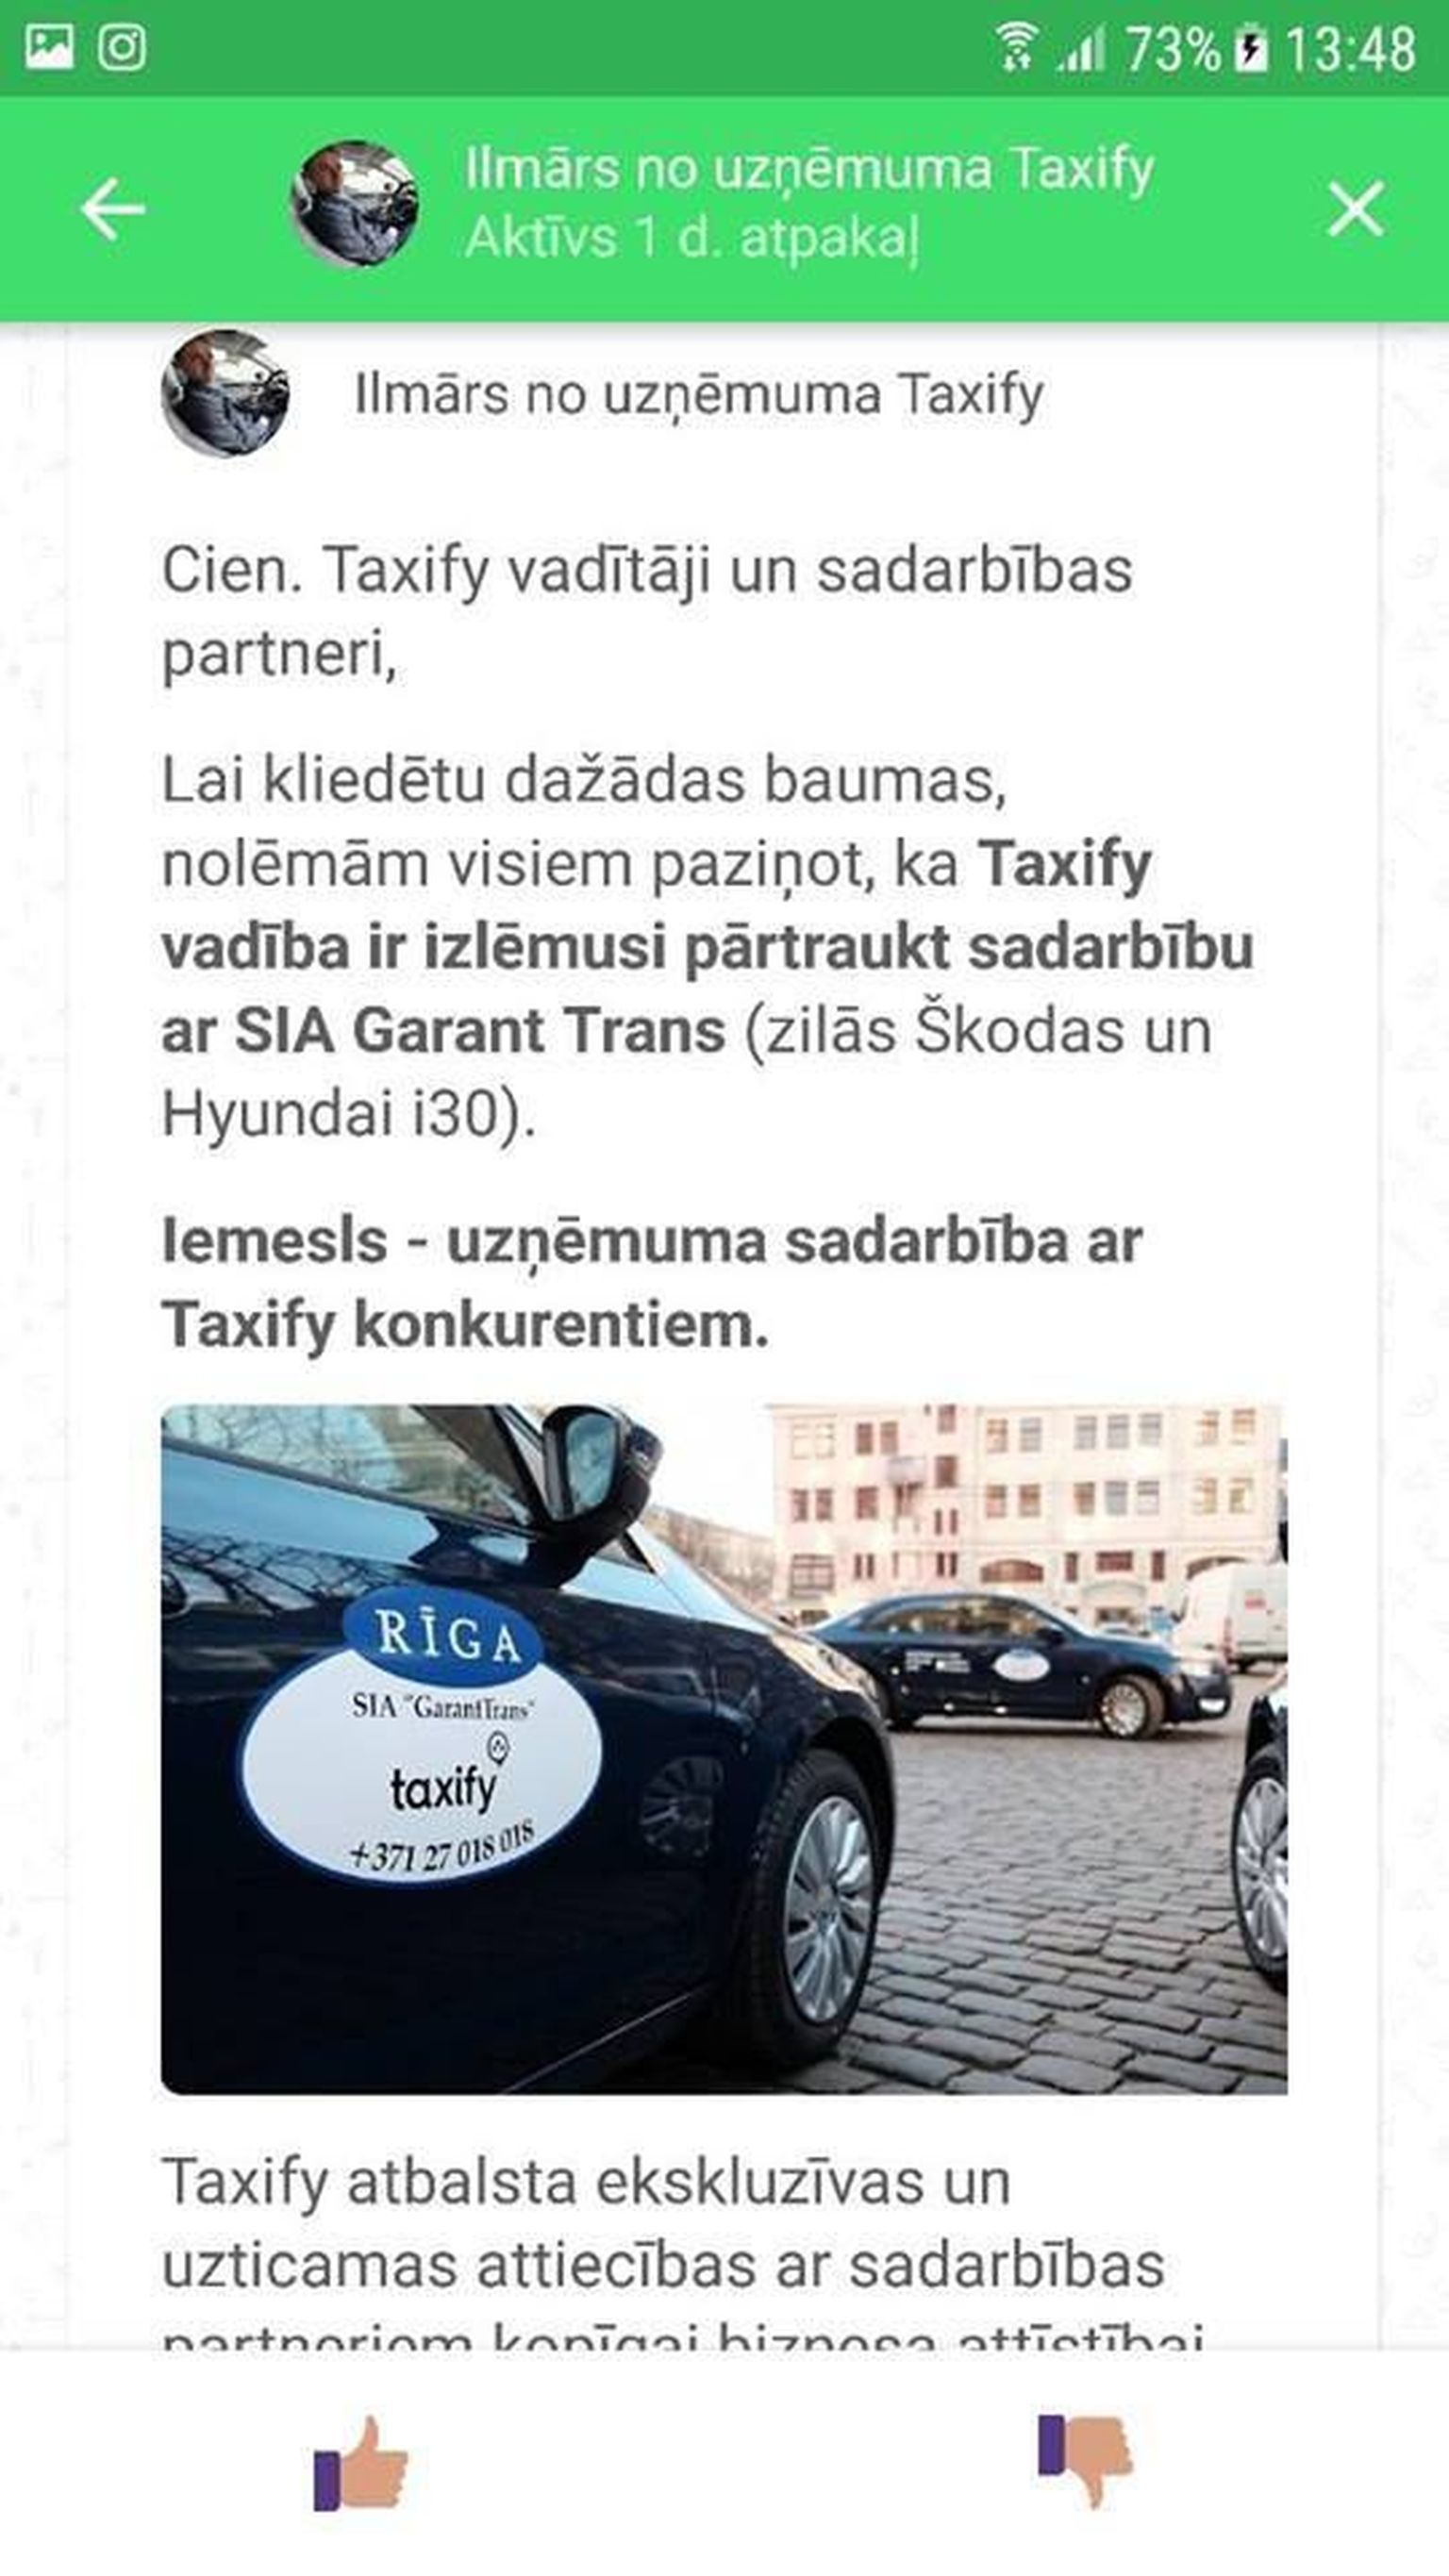 SMS, в котором Taxify сообщал о прекращении сотрудничества с 25 рижскими таксистами.